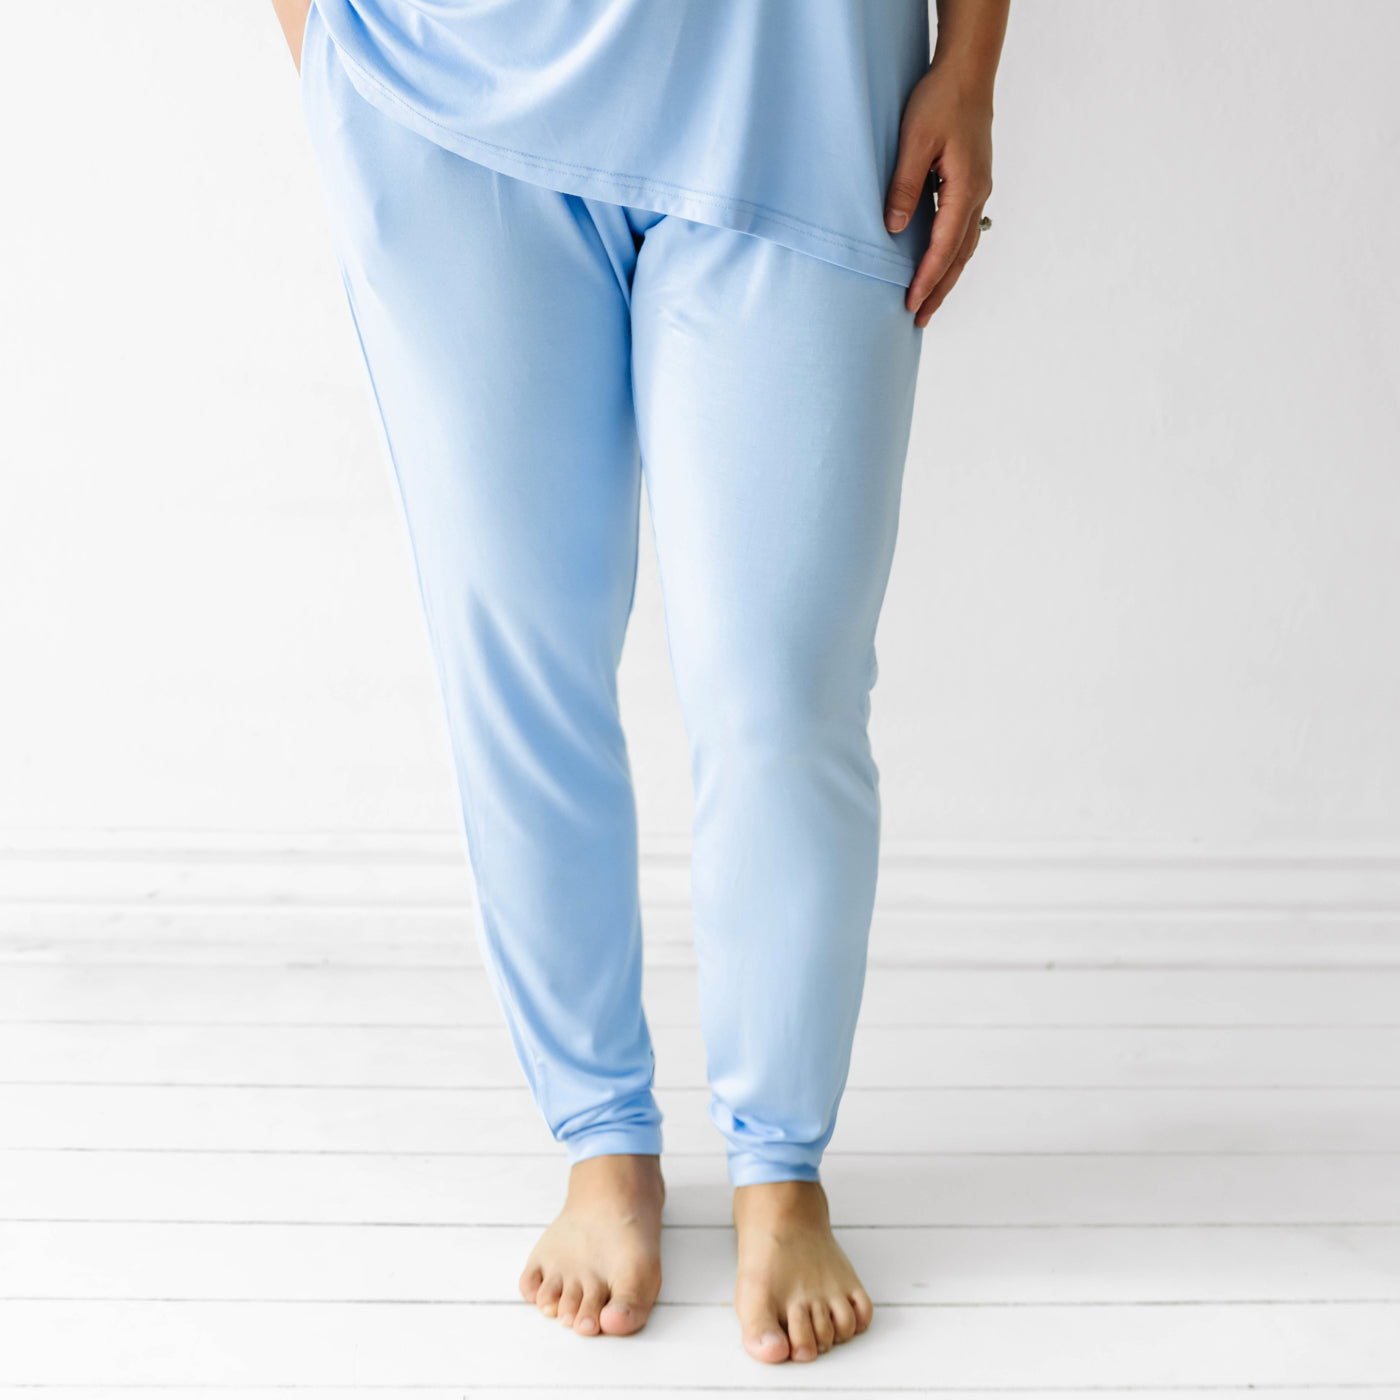 Footie Pajama Bottoms  pajama bottoms